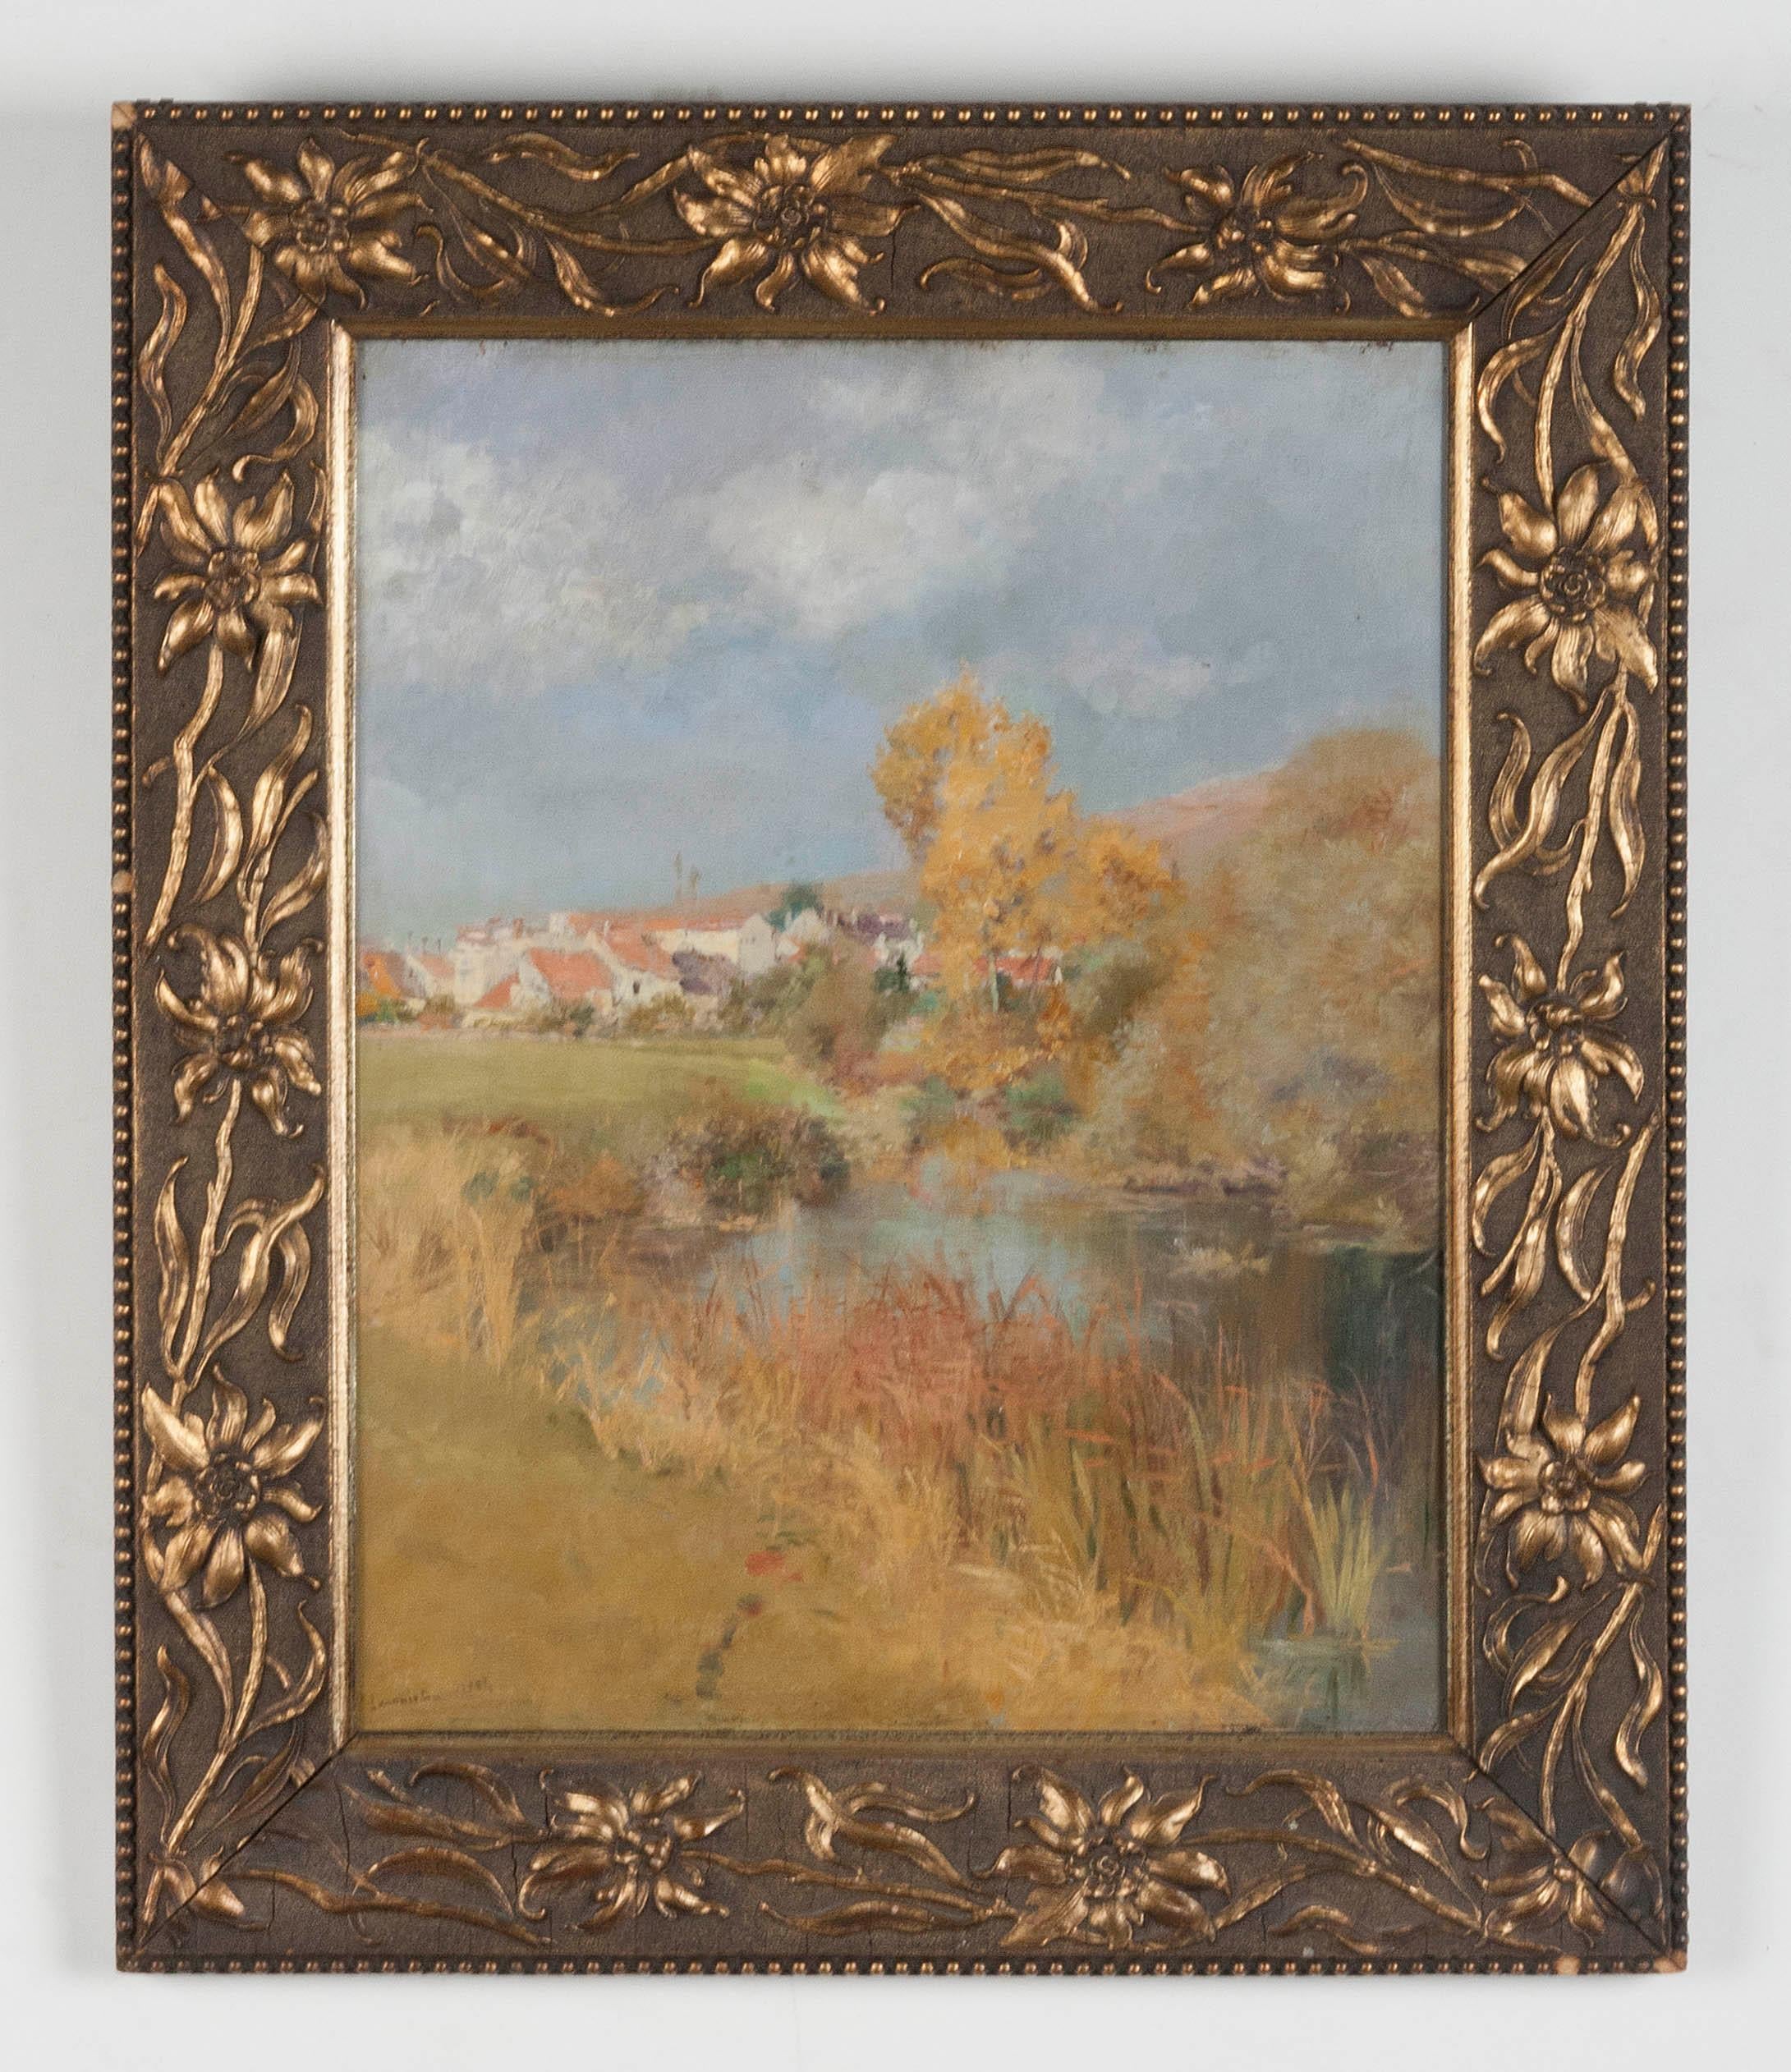 Tableau impressionniste du peintre suisse Jeanniot. Il s'agit d'une huile sur un panneau d'acajou, la peinture est signée en bas à gauche et datée de 1884.
Au dos se trouve une étiquette, vraisemblablement collée par un ancien propriétaire, avec